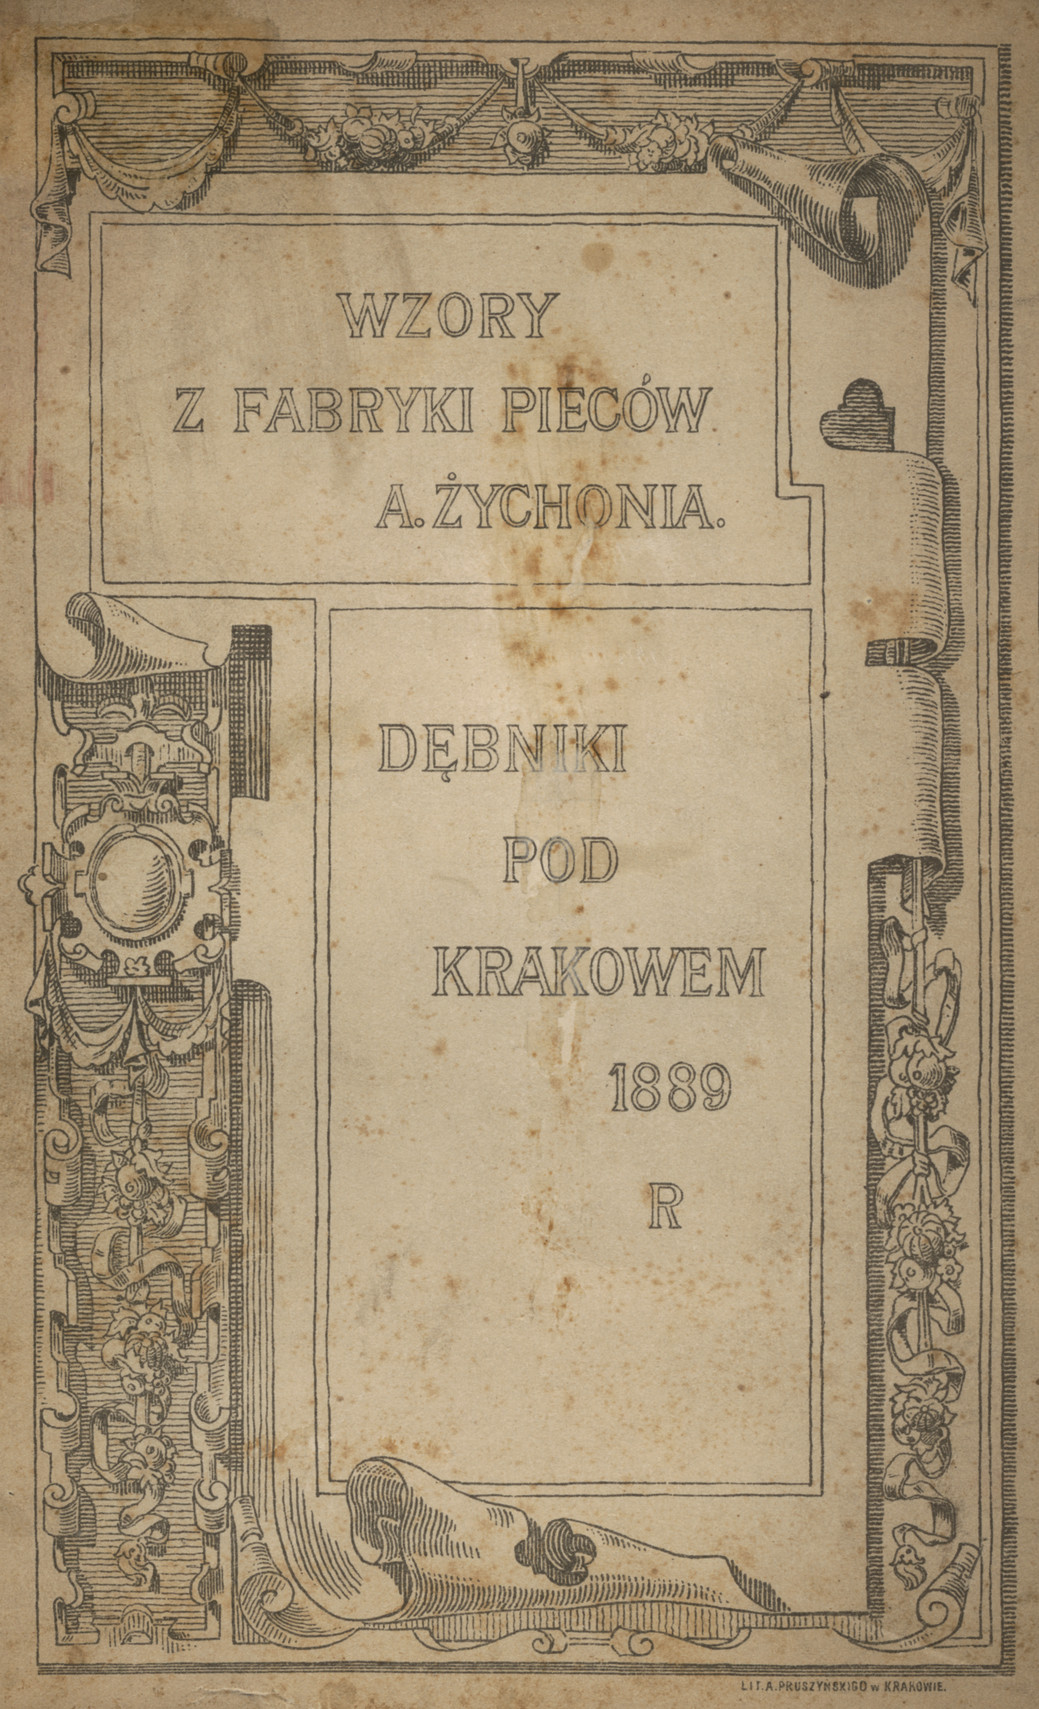 Wzory z fabryki pieców A. Żychonia : Dębniki pod Krakowem 1889 R.